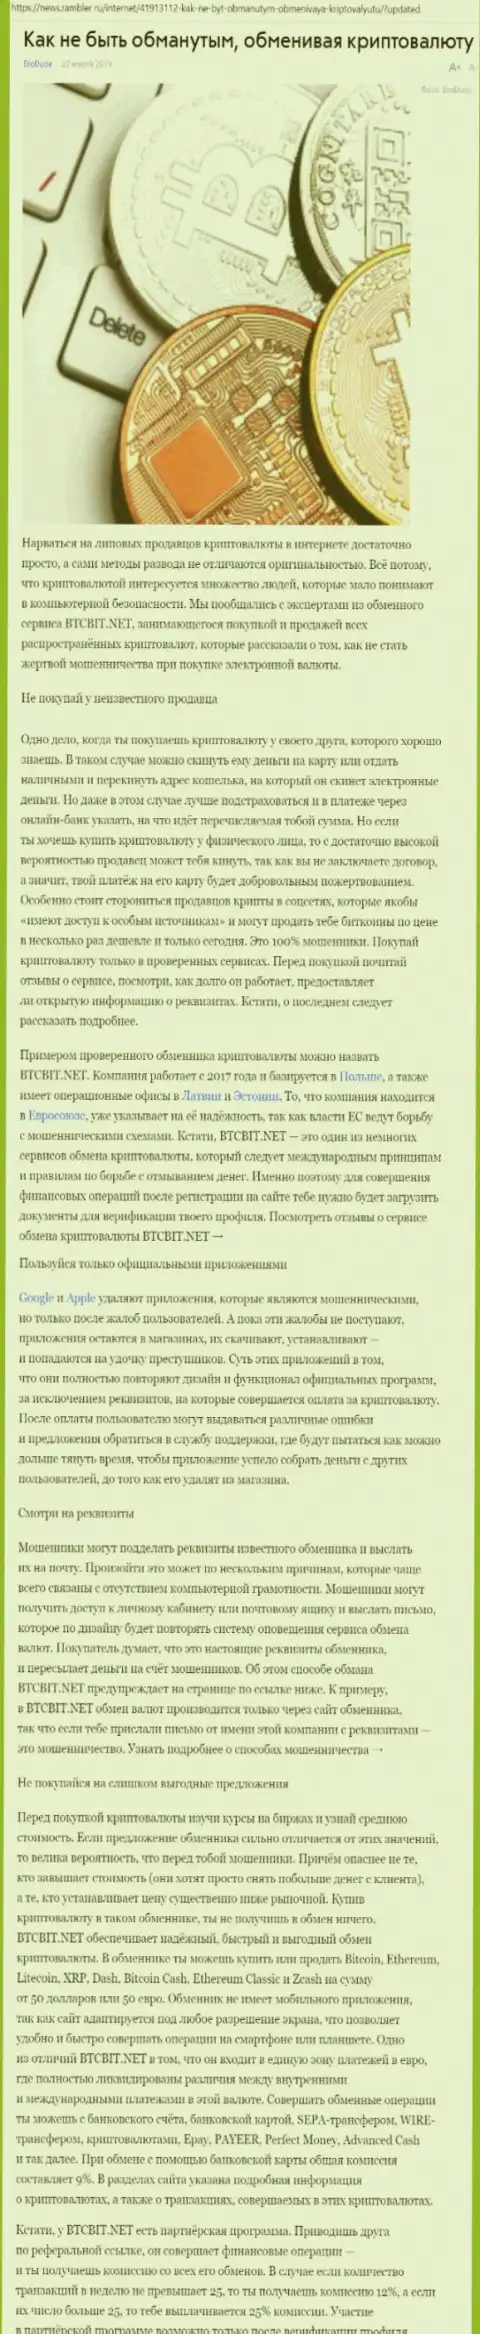 Статья об организации BTCBit на News Rambler Ru